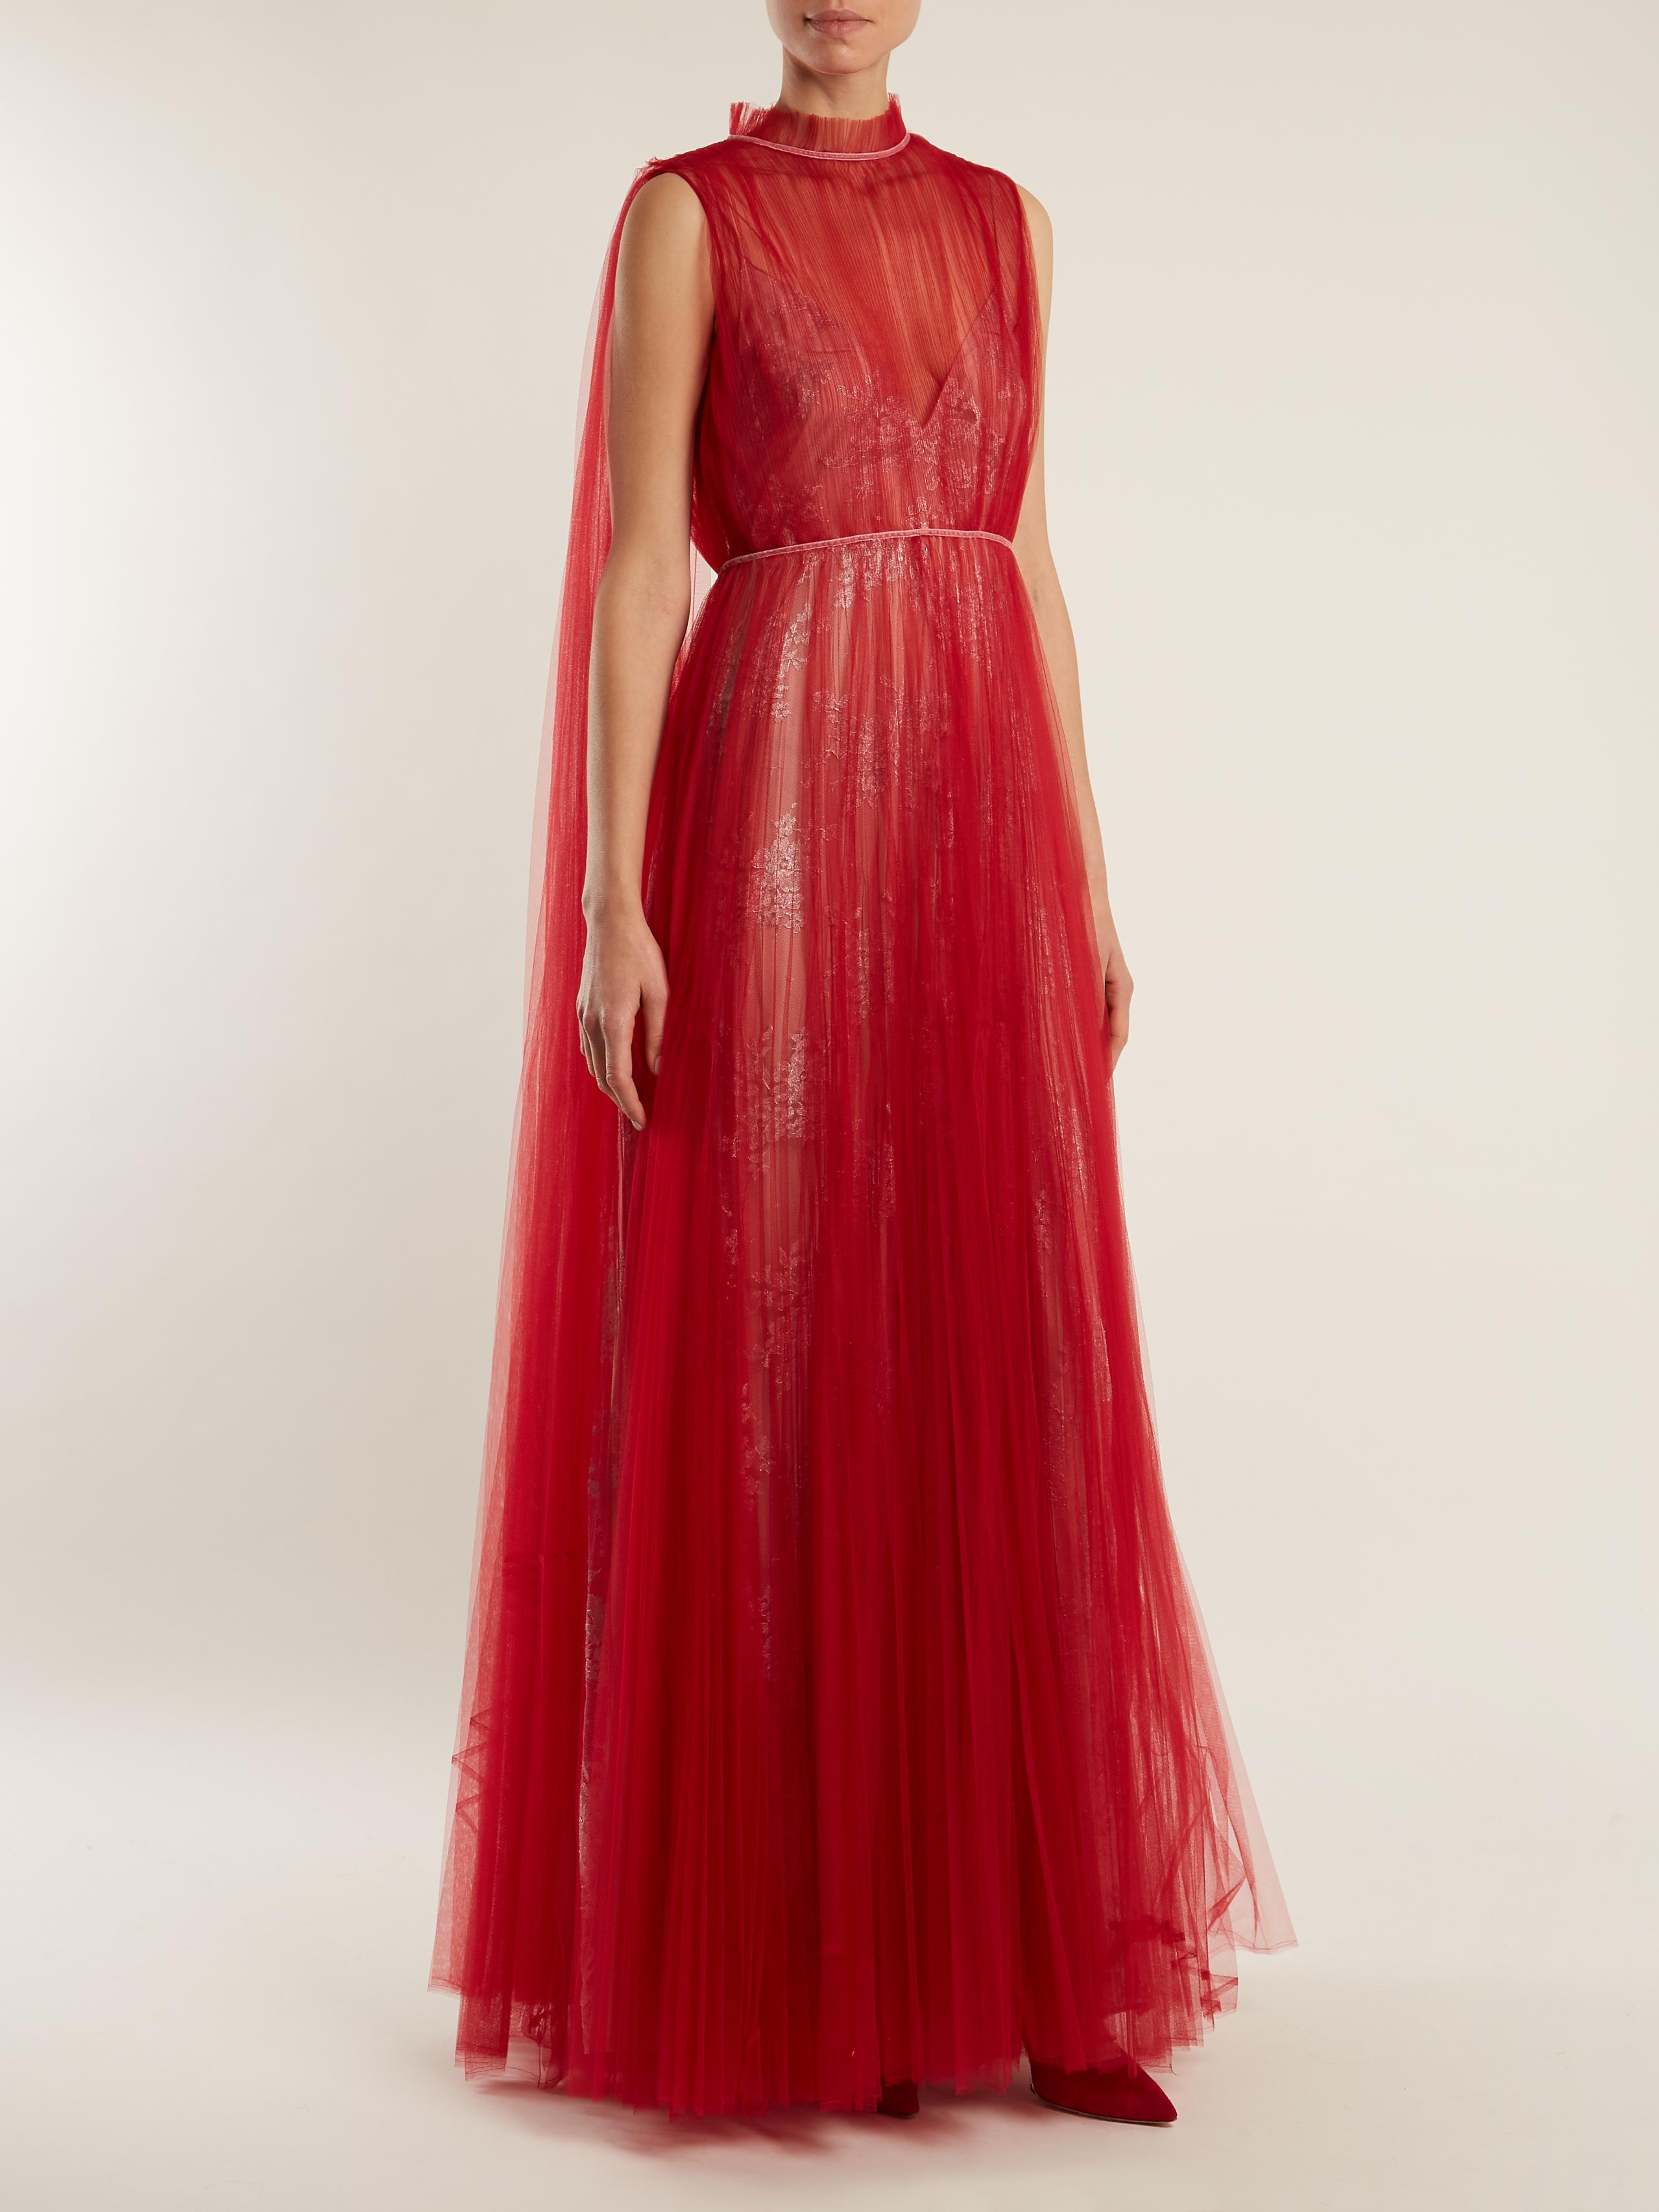 Women's red floral sleeveless dress, Dress Skirt Evening gown Woman, Red  dress, fashion, tartan png | PNGEgg